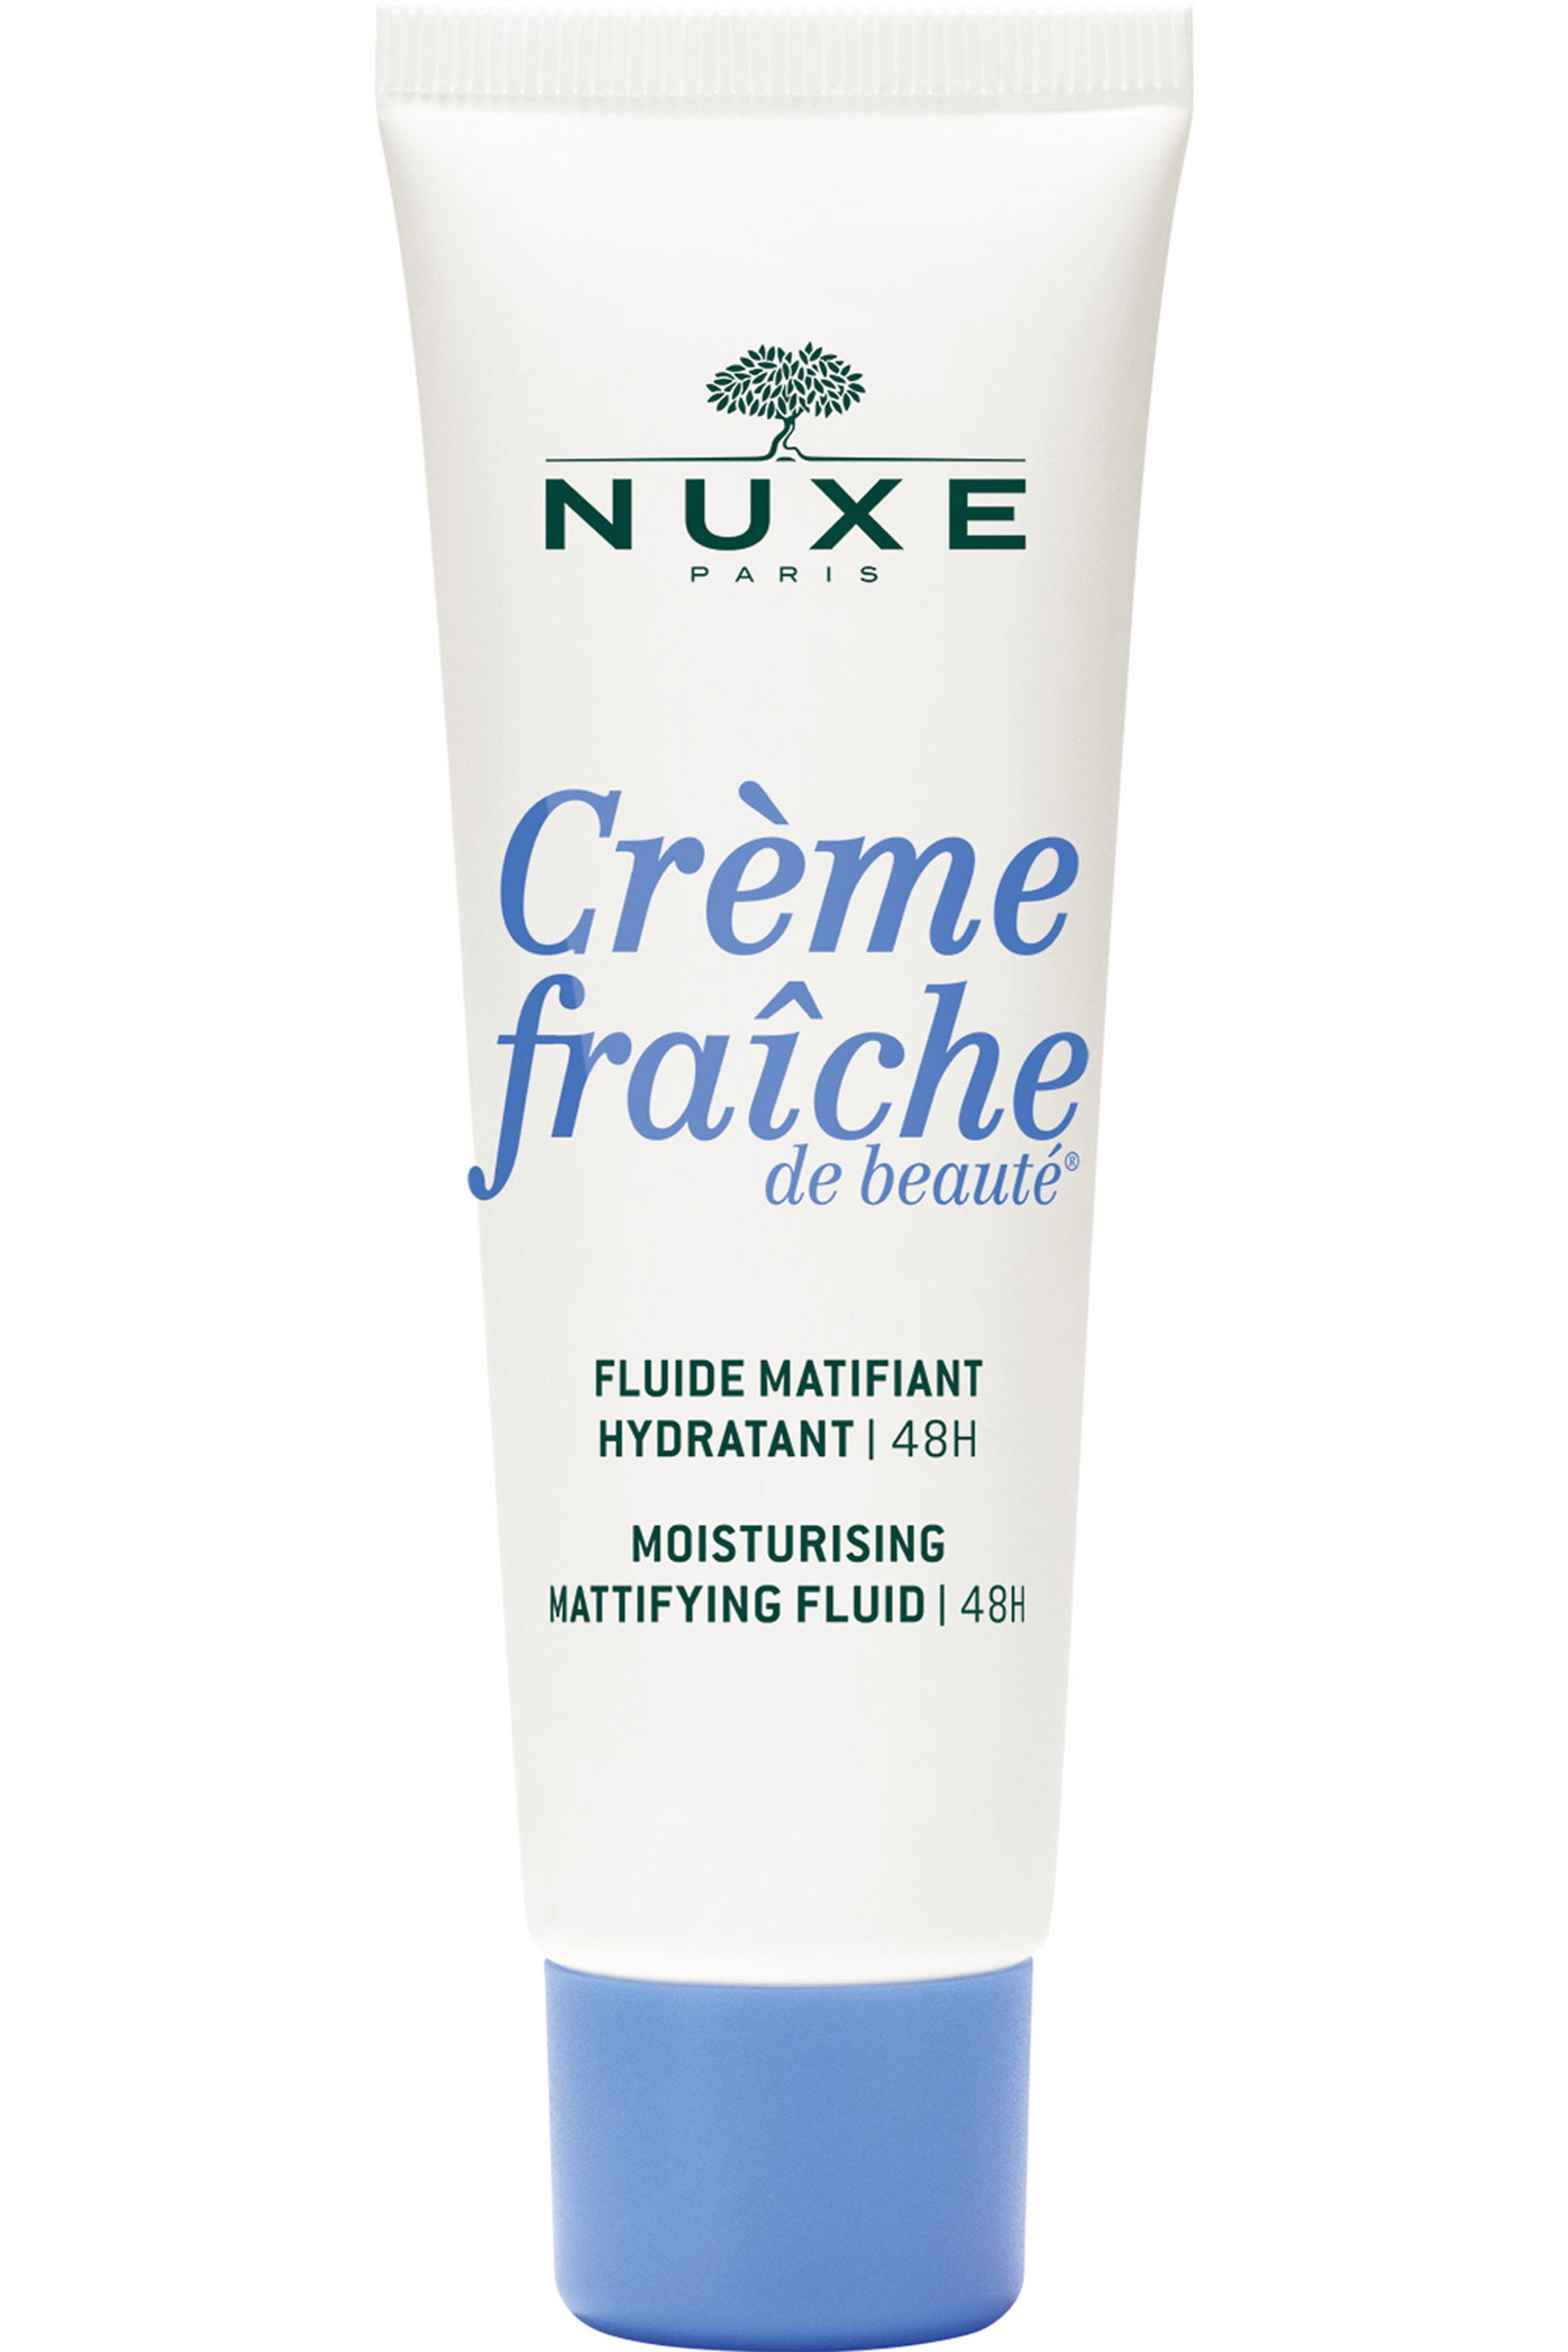 Nuxe Fluide matifiant Crème fraîche de beauté - Soin visage peau mixte